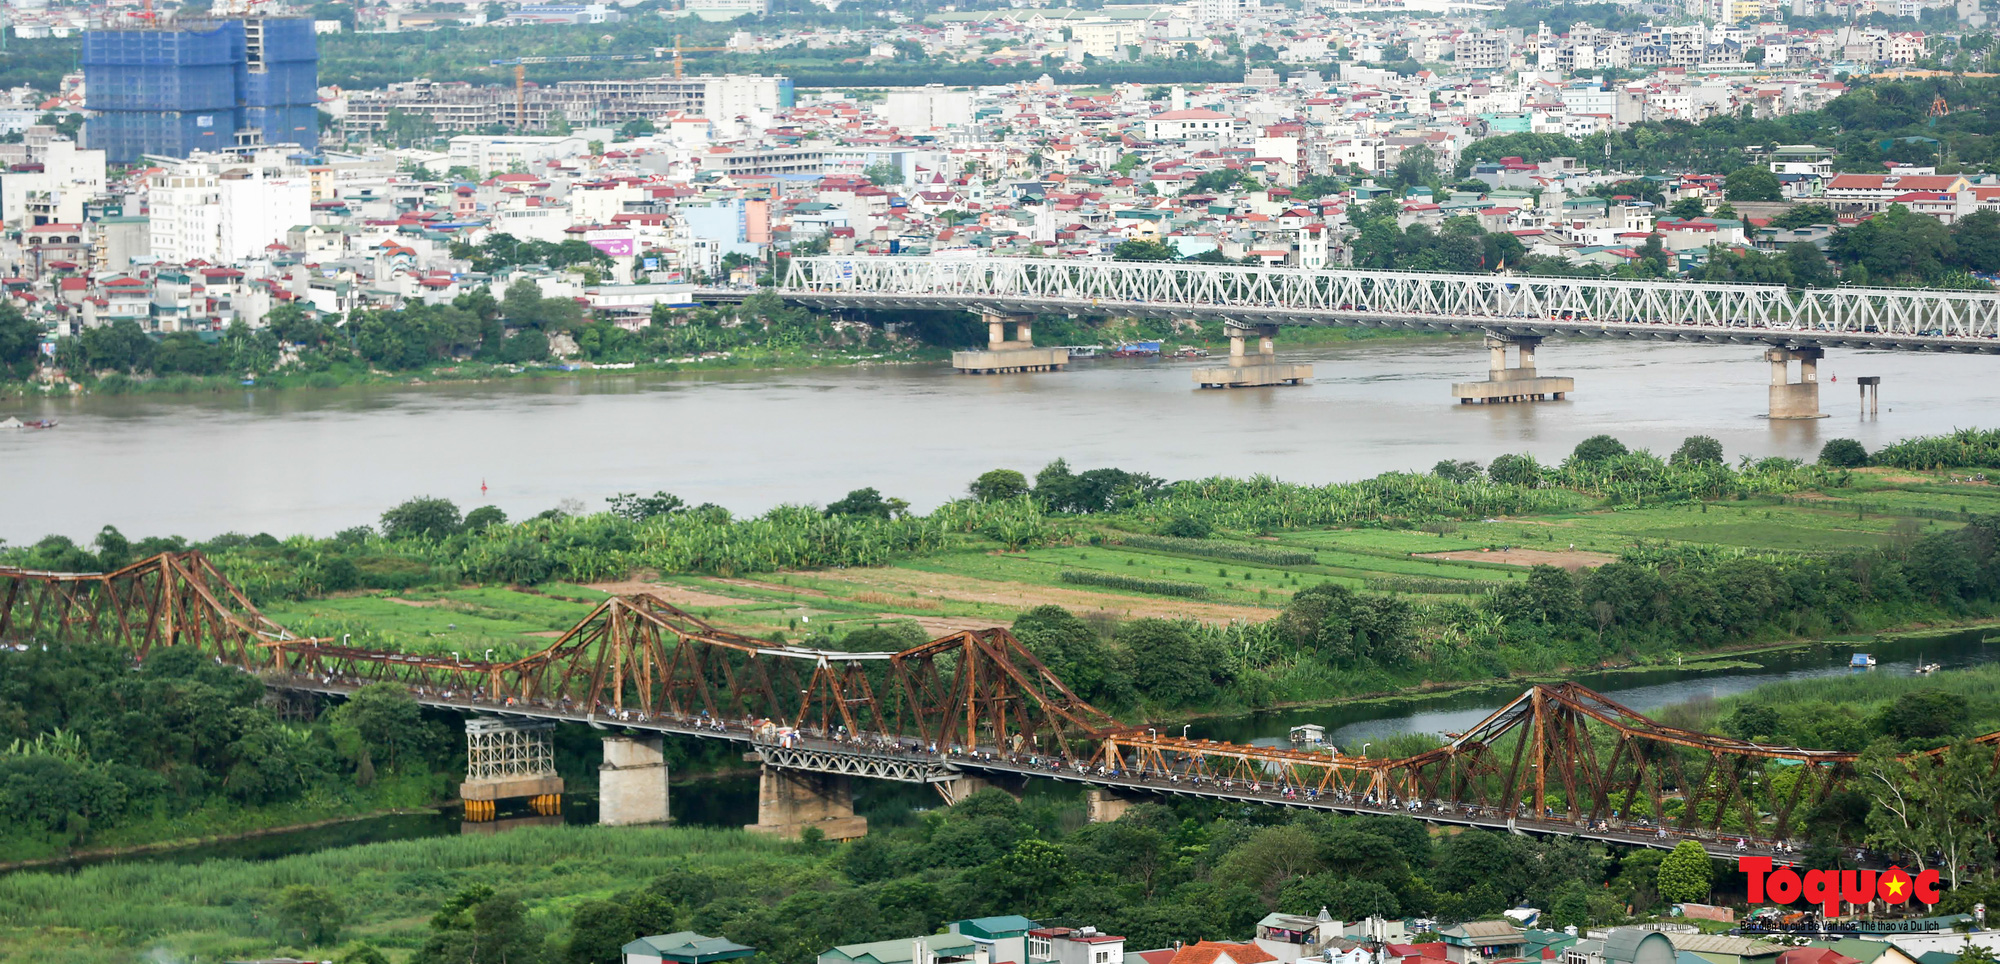 Cận cảnh những cây cầu bắc qua sông Hồng ở Thủ đô Hà Nội - Ảnh 5.